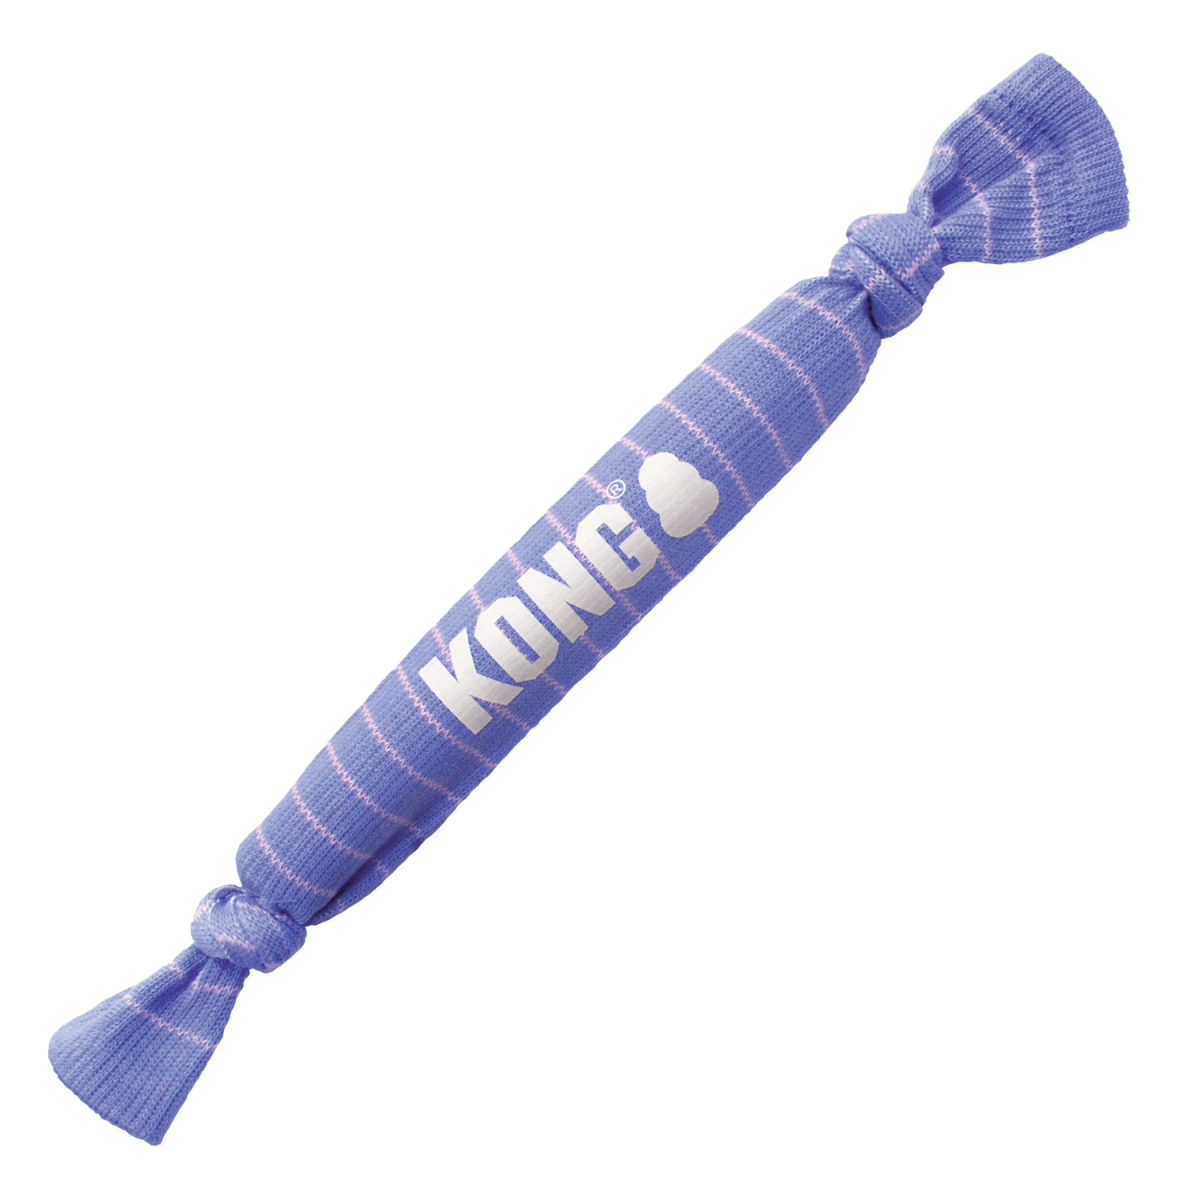 KONG Signature Crunch corde single pour chiot